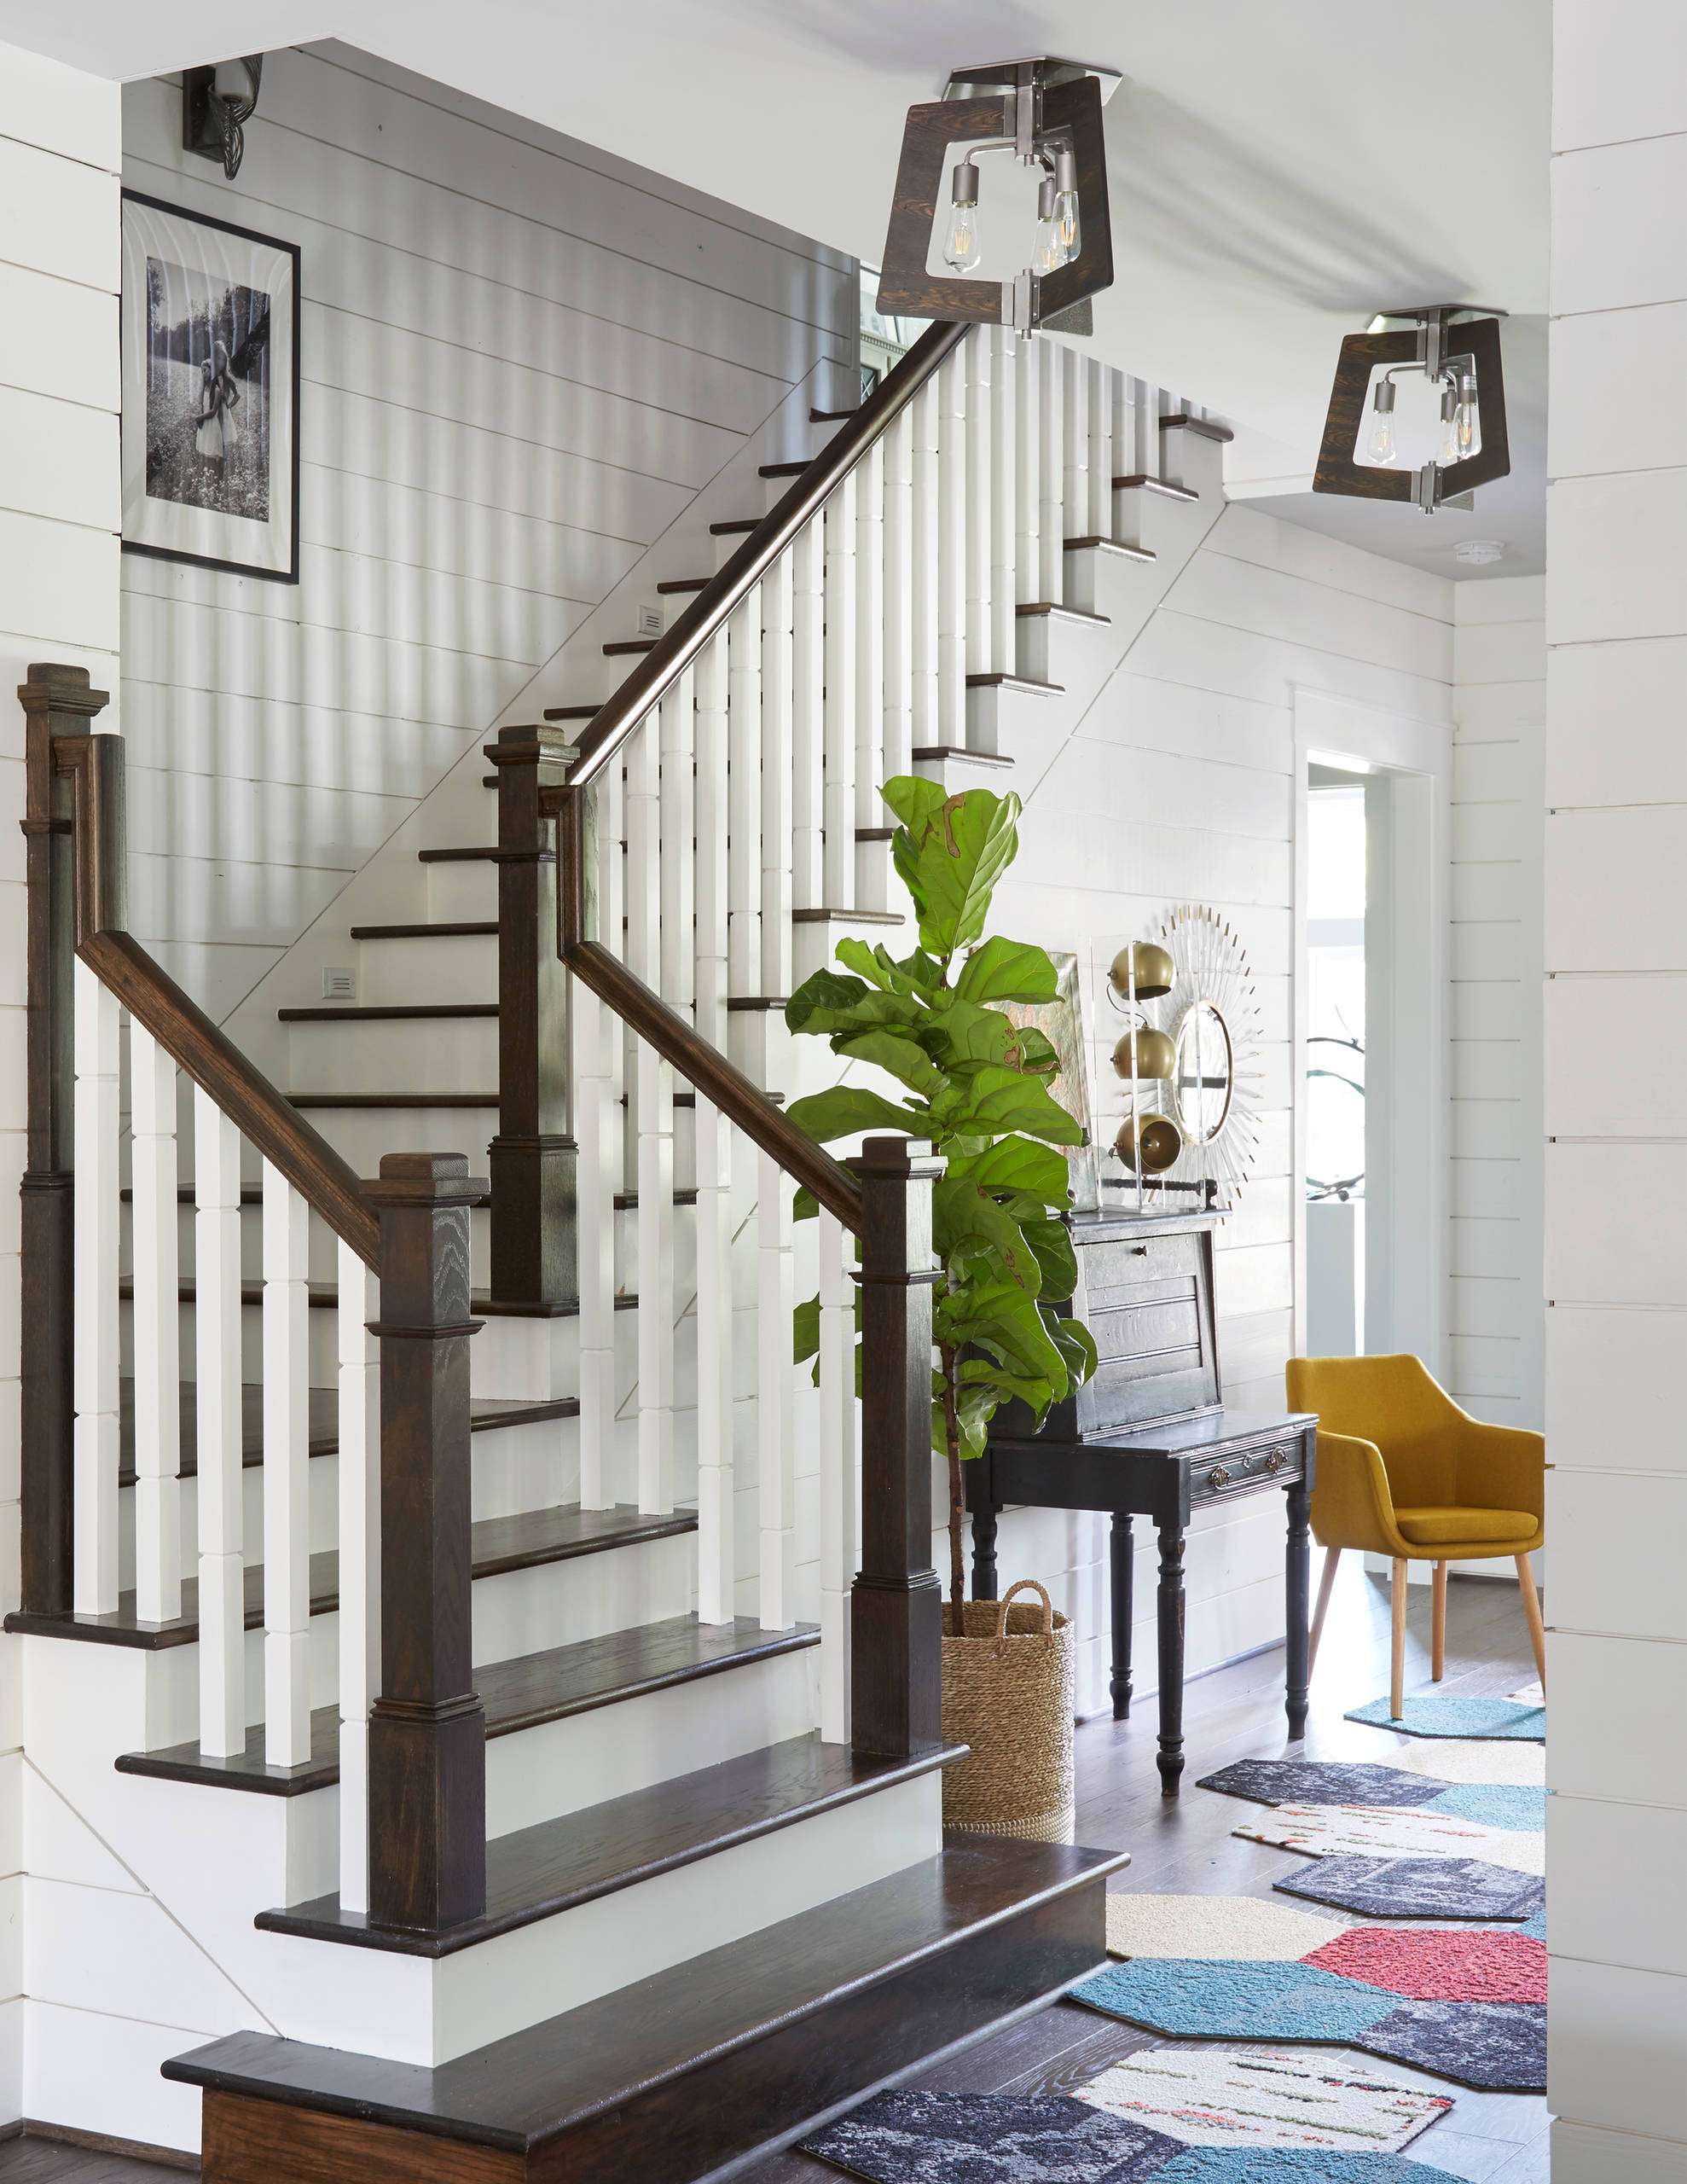 Sử dụng gam màu trắng trong thiết kế lam gỗ cầu thang để tạo nên sự tinh tế, nhẹ nhàng